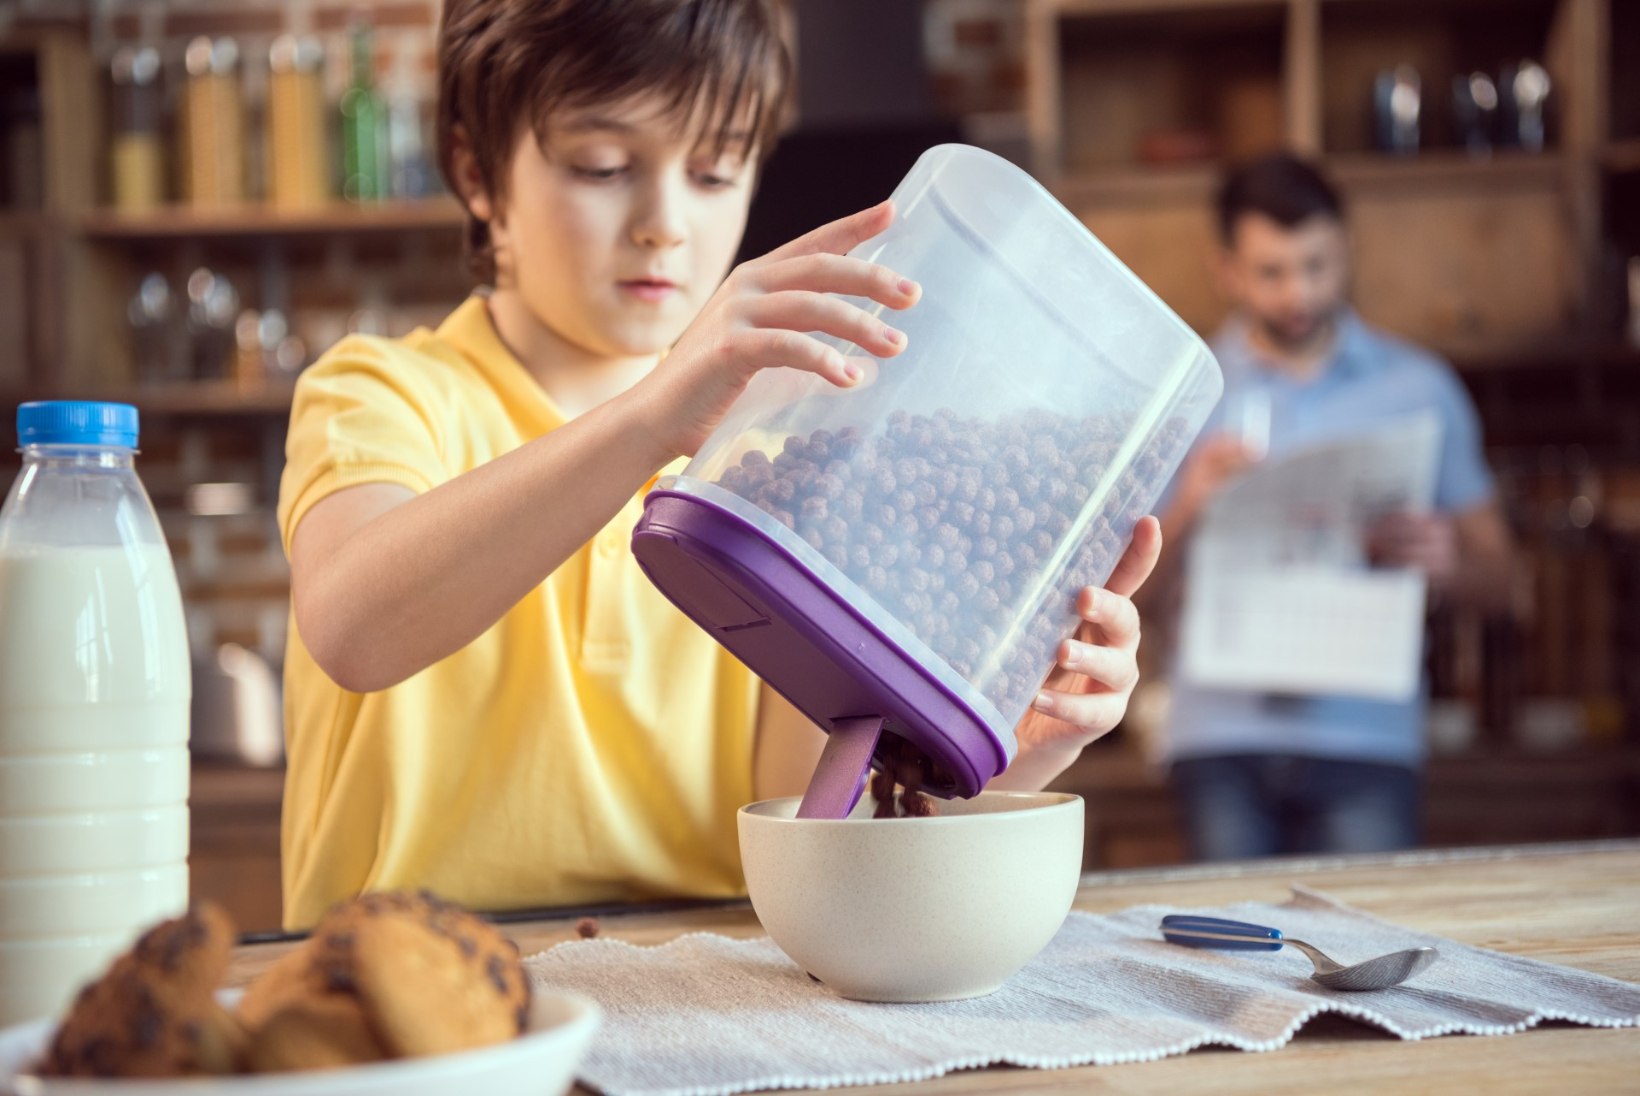 Toitumisnõustaja: ainult võileib või hommikuhelbed ei ole koolilapsele sobiv hommikusöök